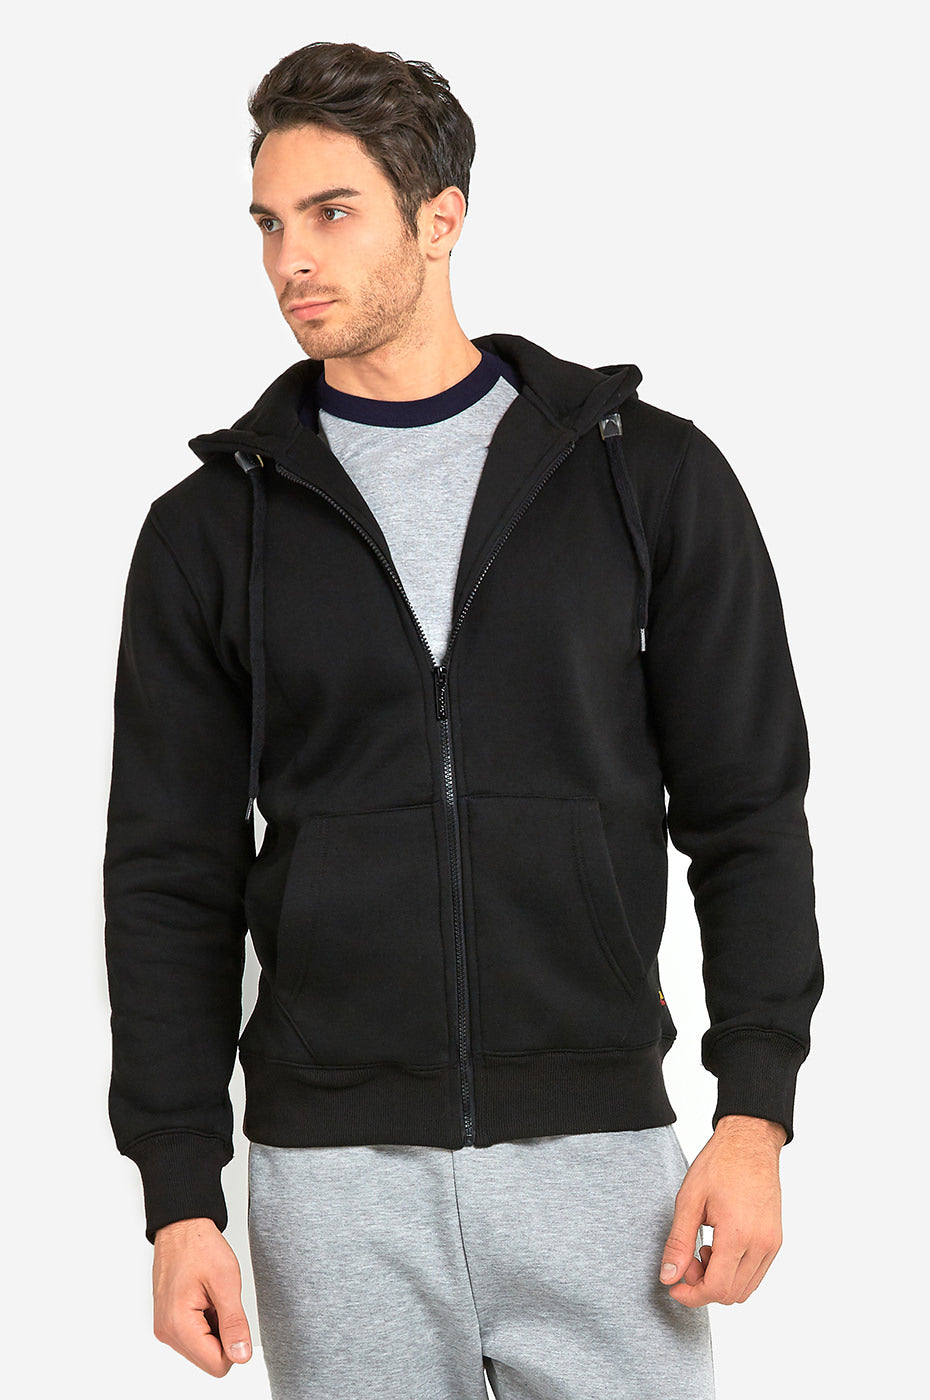 Knocker Men's Full Zip Up Heavyweight Cotton Blend Fleece Hoodie Sweatshirt  - Black / S